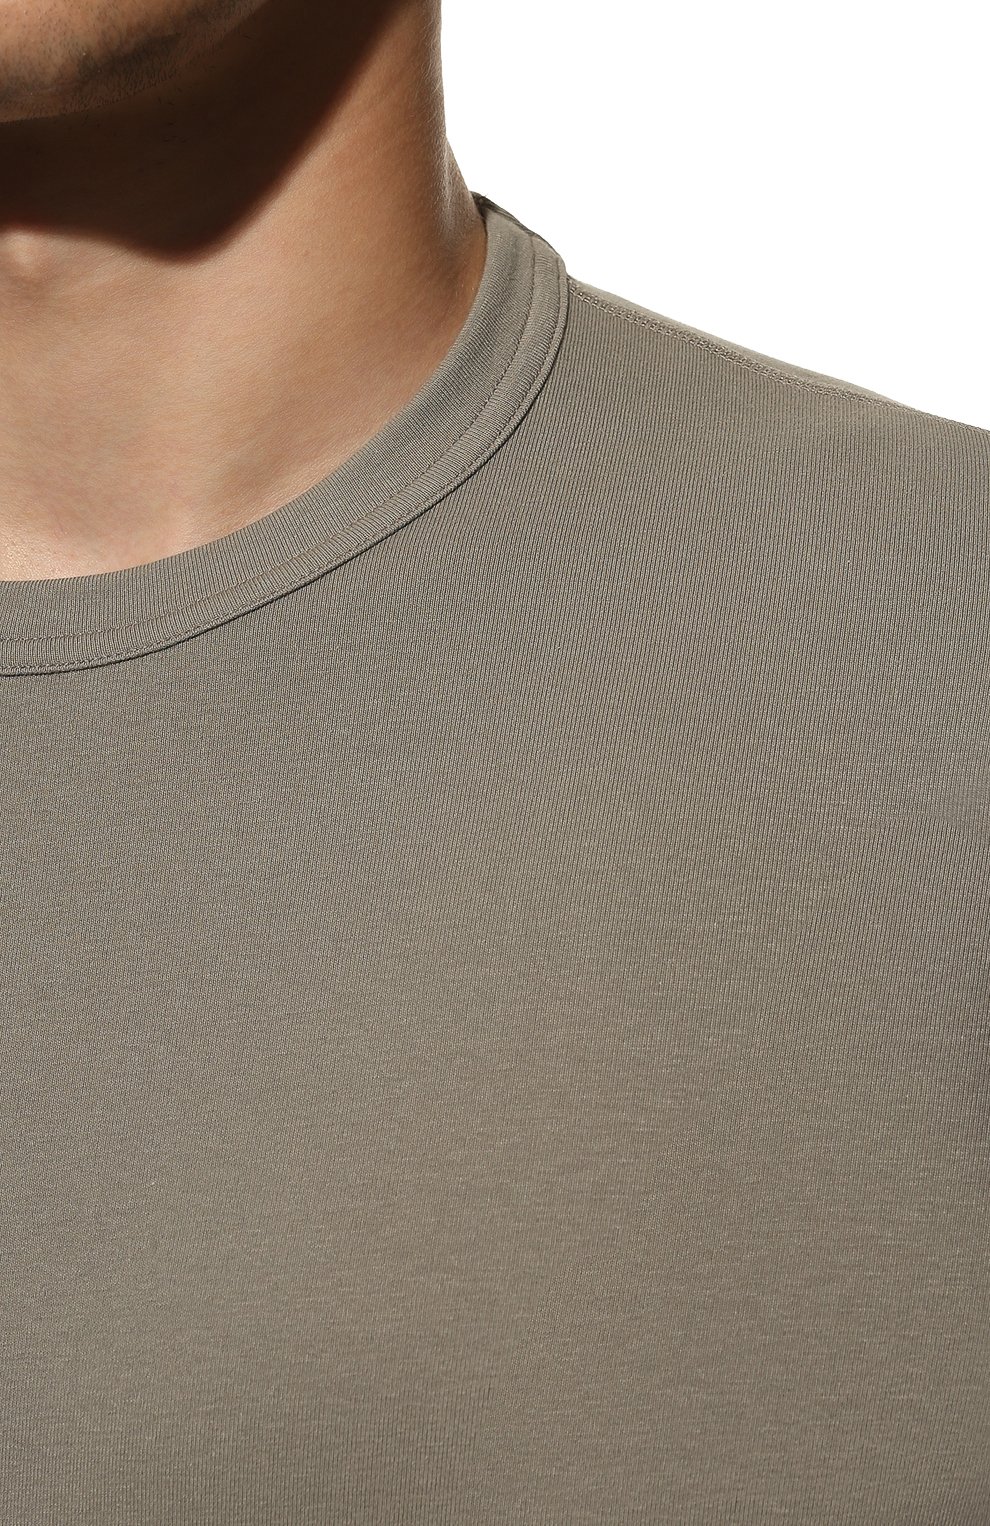 Мужская хлопковая футболка TOM FORD хаки цвета, арт. T4M081040 | Фото 5 (Кросс-КТ: домашняя одежда; Рукава: Короткие; Длина (для топов): Стандартные; Материал внешний: Хлопок)